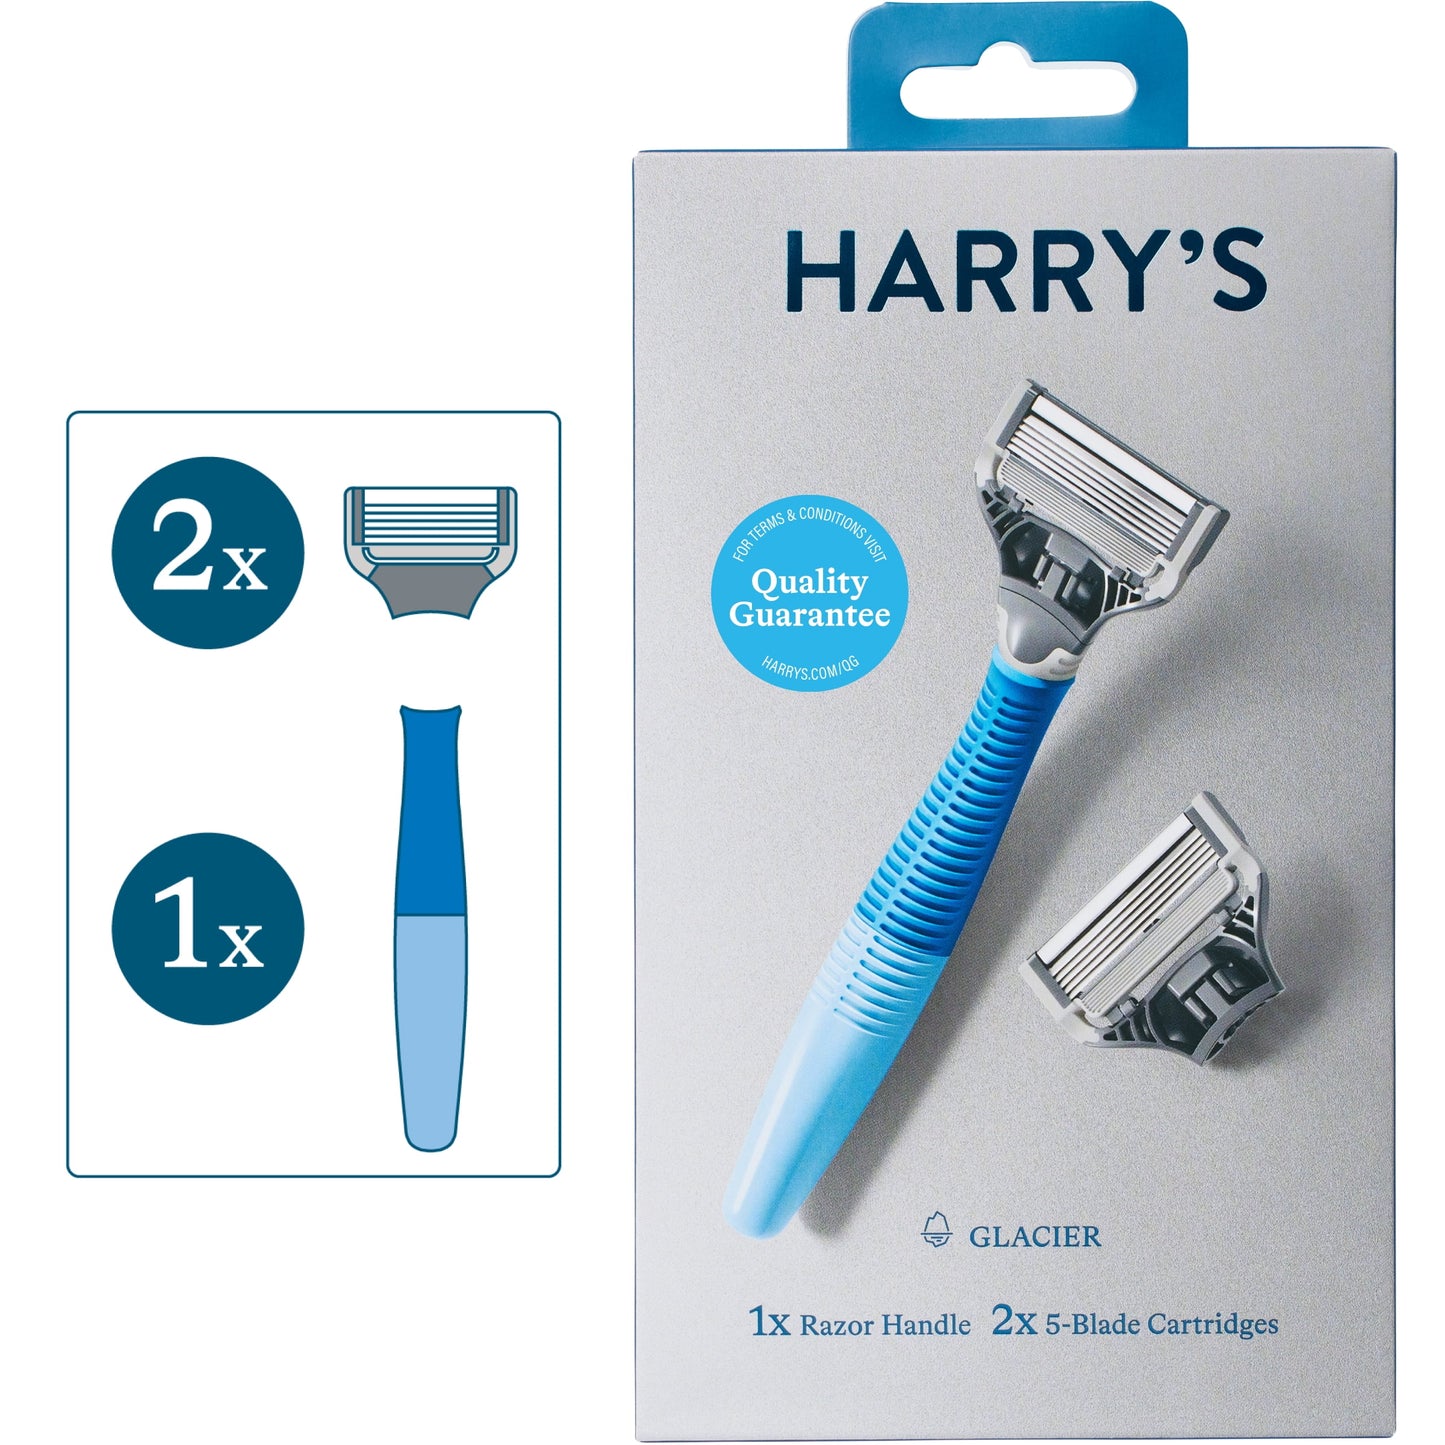 Harry's Men's 5-Blade Manual Razor Handle and 2 Razor Blade Refills, Glacier Blue